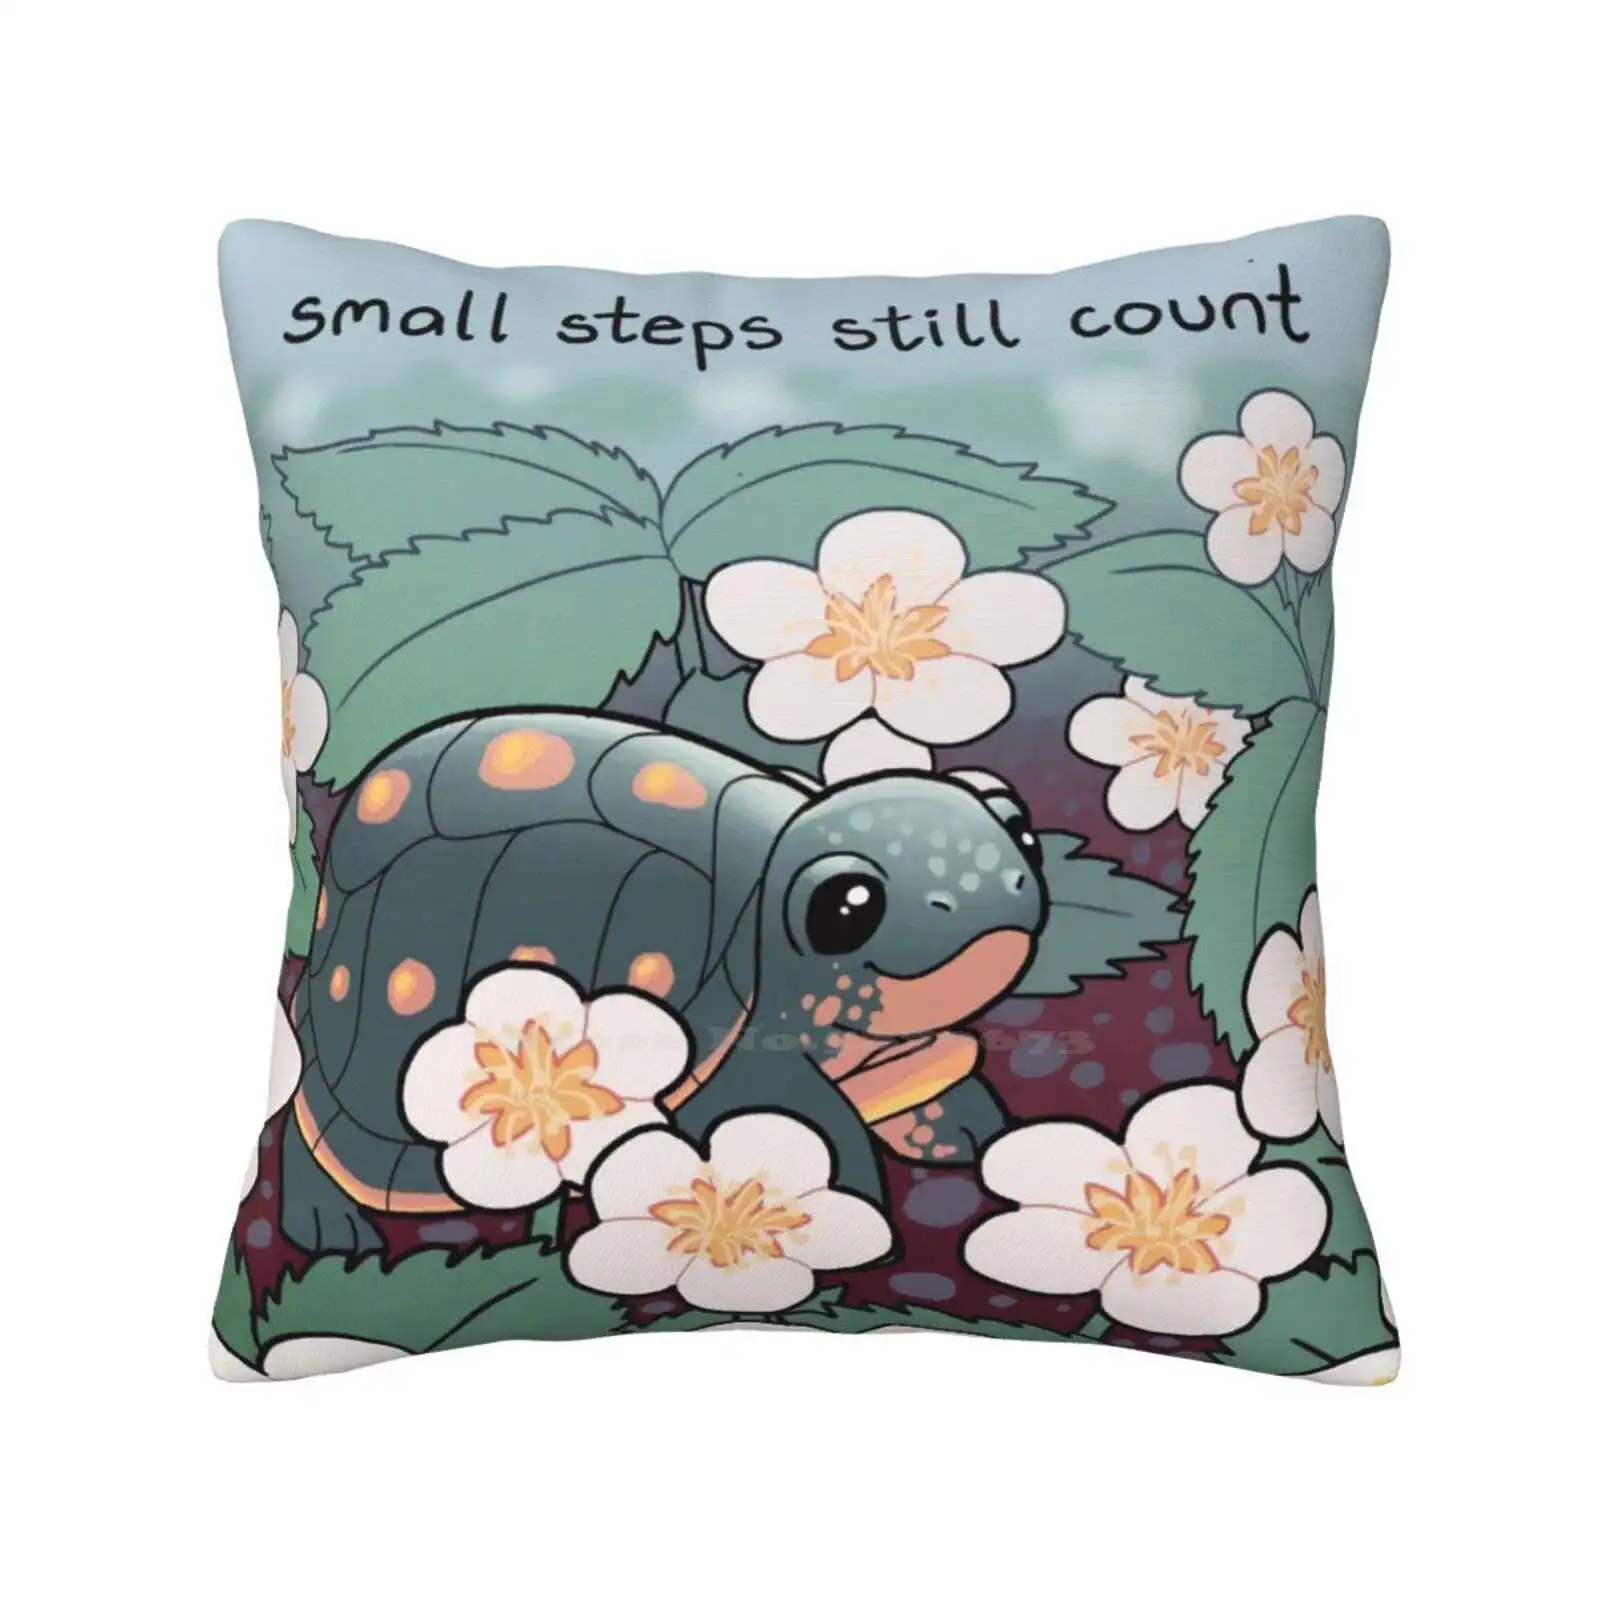 

Наволочка «маленькие шаговые по-прежнему», детская черепаха в клубничном цвете, подушка, подушка для психического здоровья, для самостоятельного ухода, самостоятельного приема